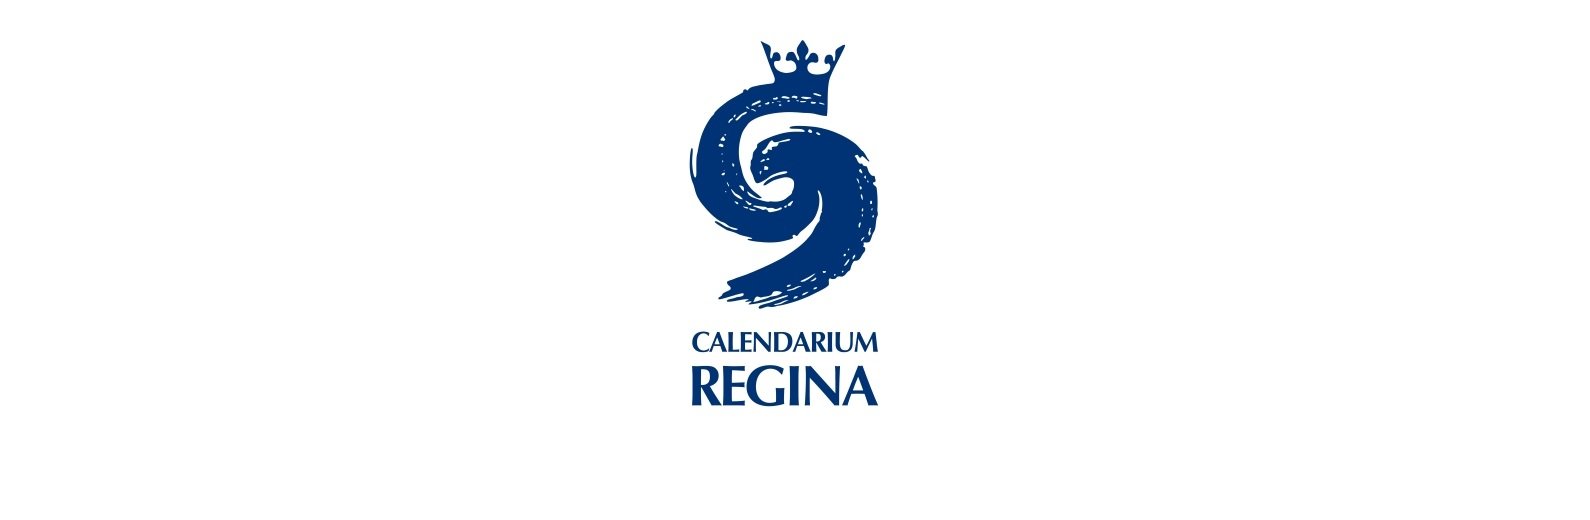 Město bude nadále podporovat smysluplné kulturní akce Celandarium Regina s péčí řádného hospodáře